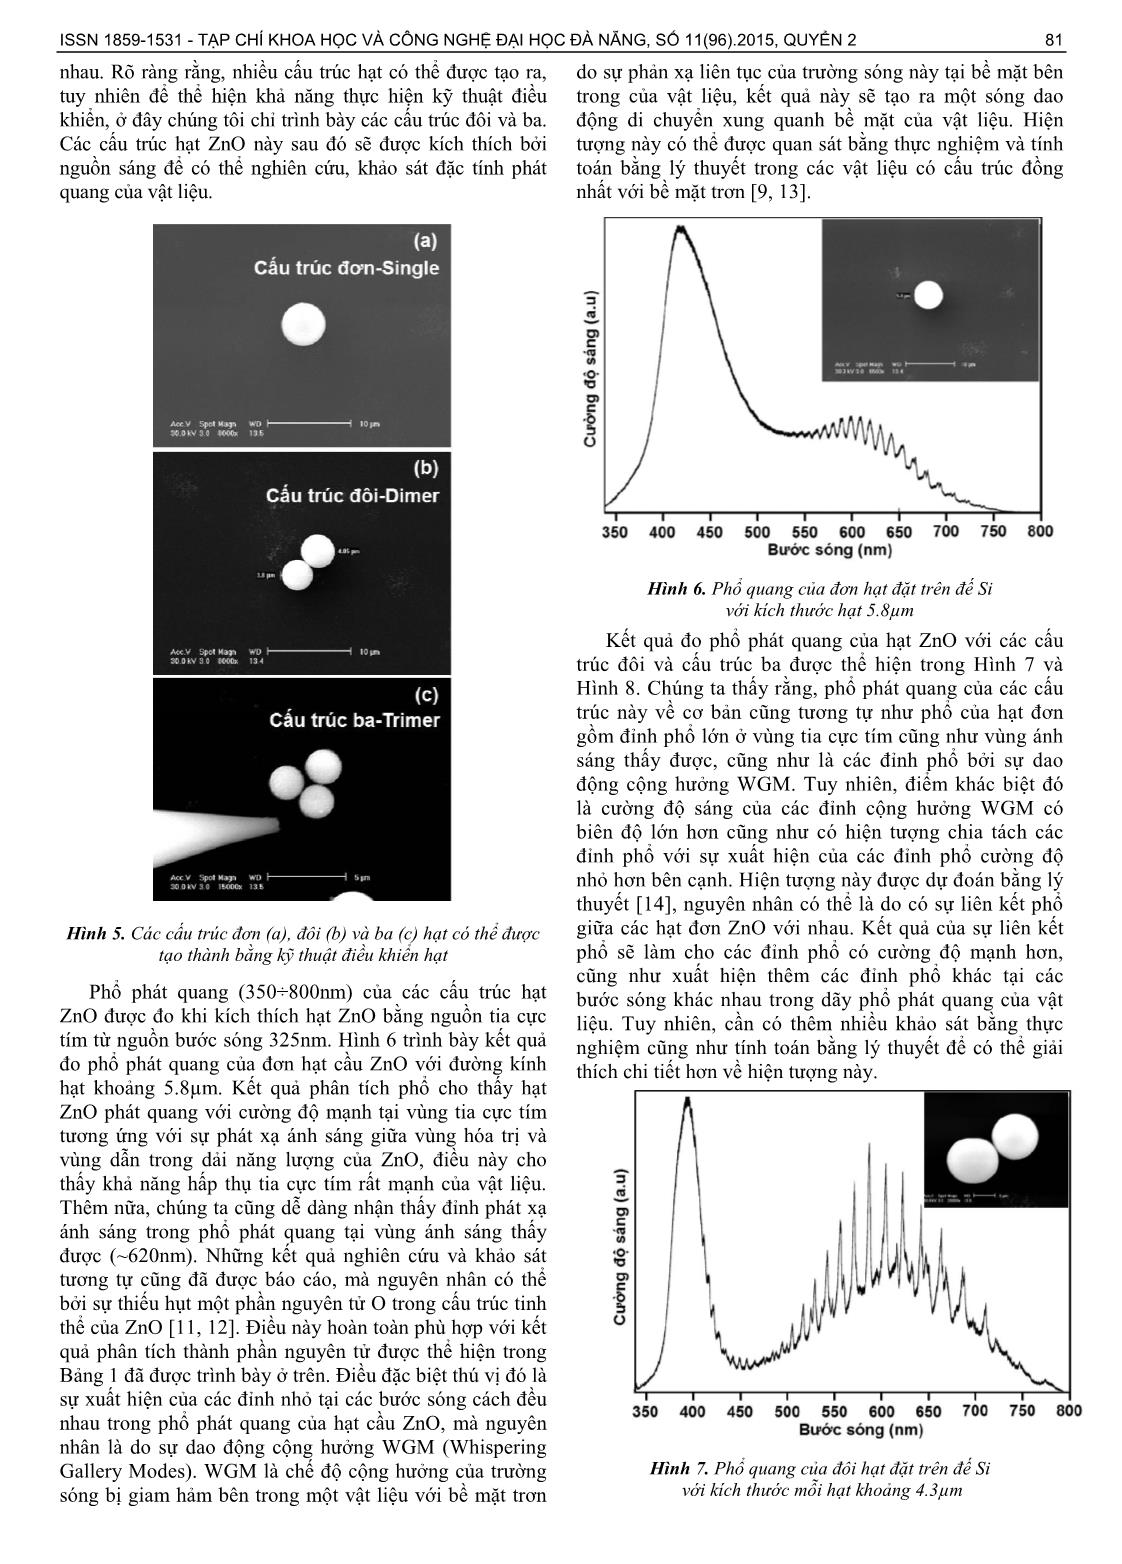 Tổng hợp và phân tích đặc tính quang của các vi hạt cầu ZnO trang 4